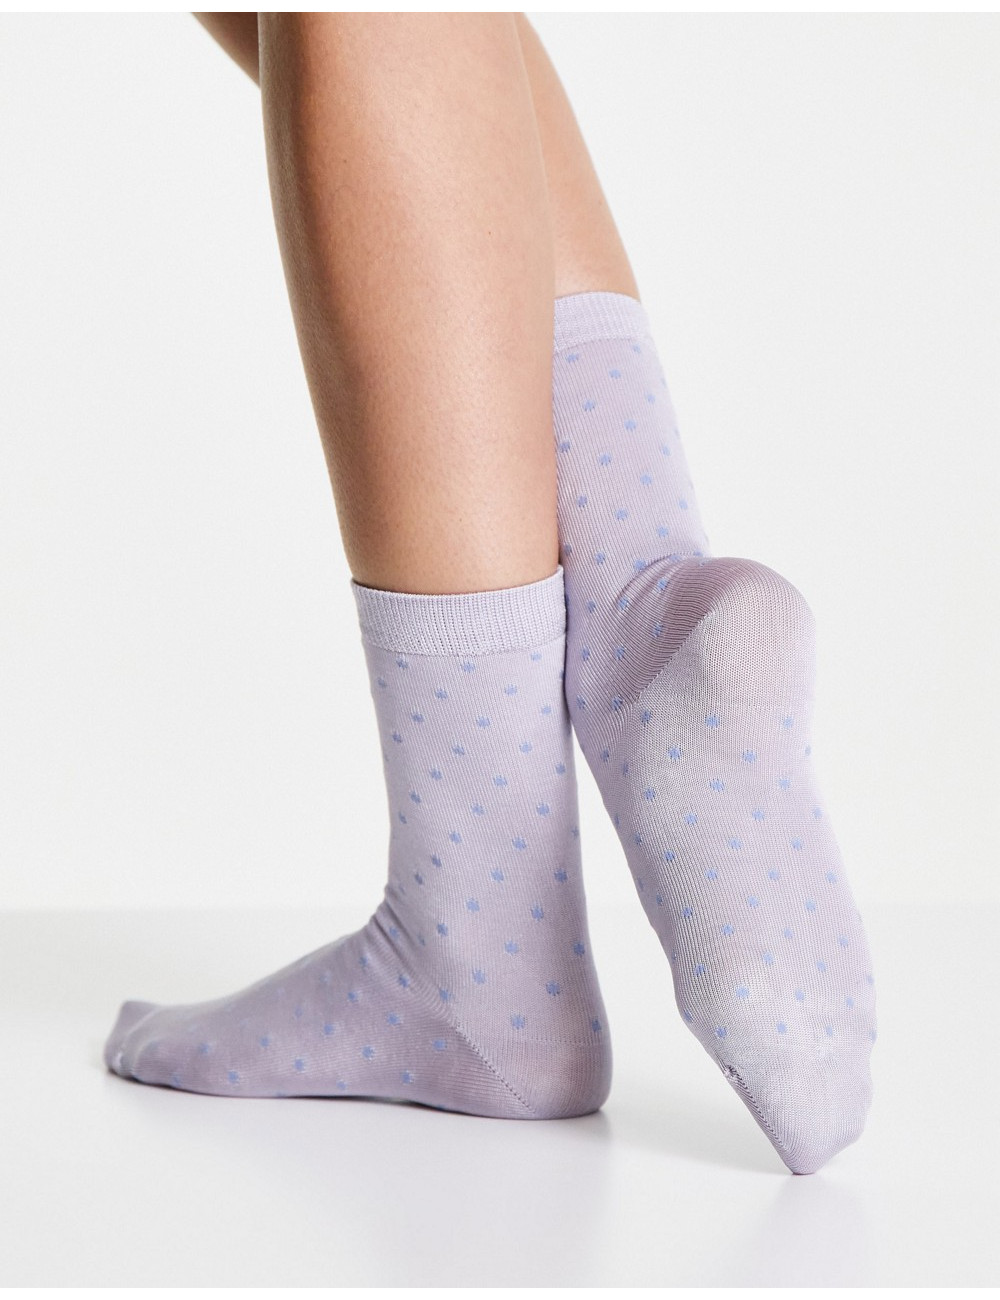 Monki Poppy sock in blue spot